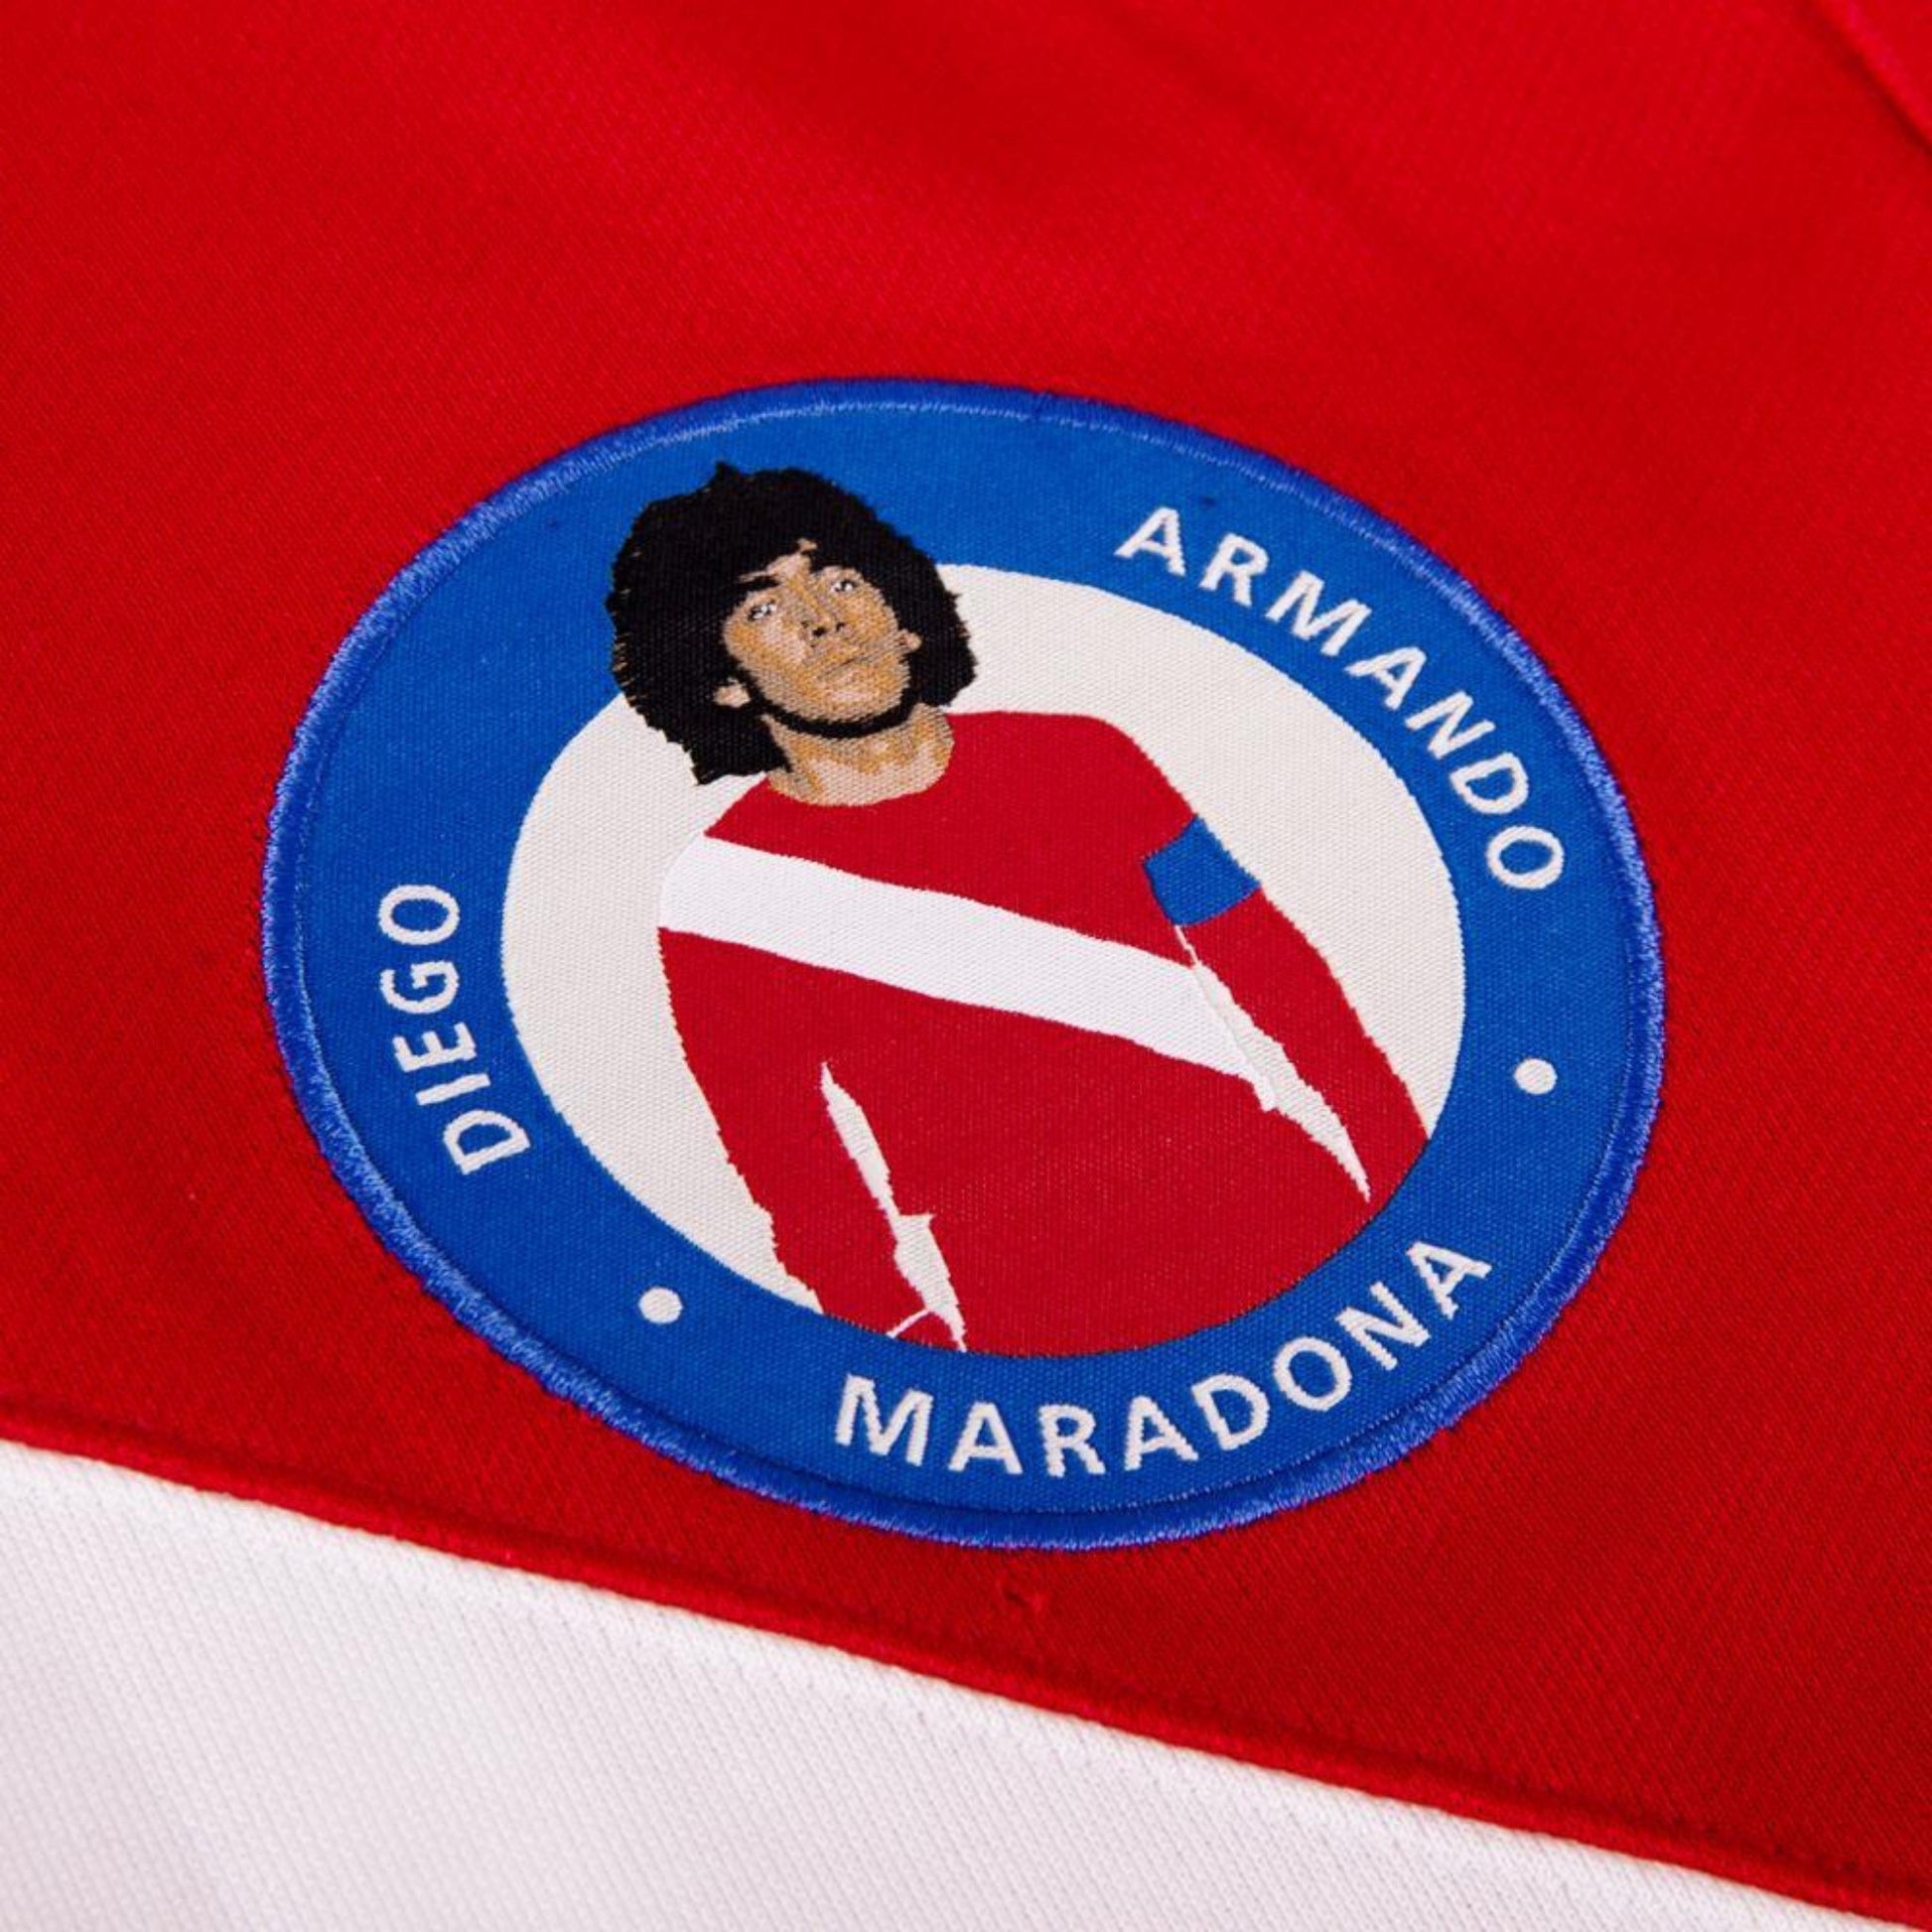 Maradona x Argentinos Juniors Retro Football Shirt 1976 | EvangelistaSports.com | Canada's Premiere Soccer Store